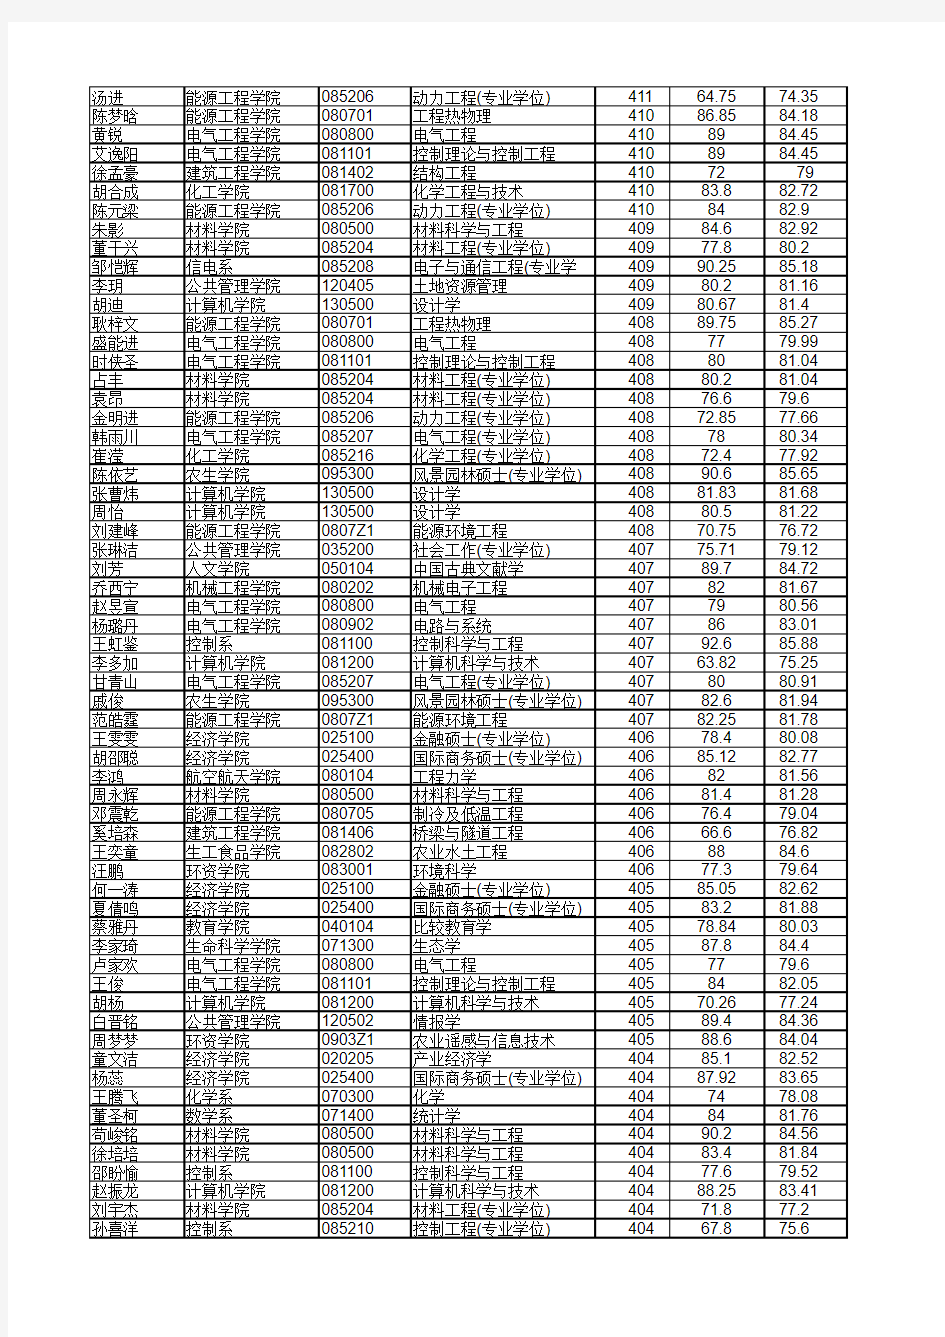 2015年浙江大学硕士生统考拟录取名单公示介绍